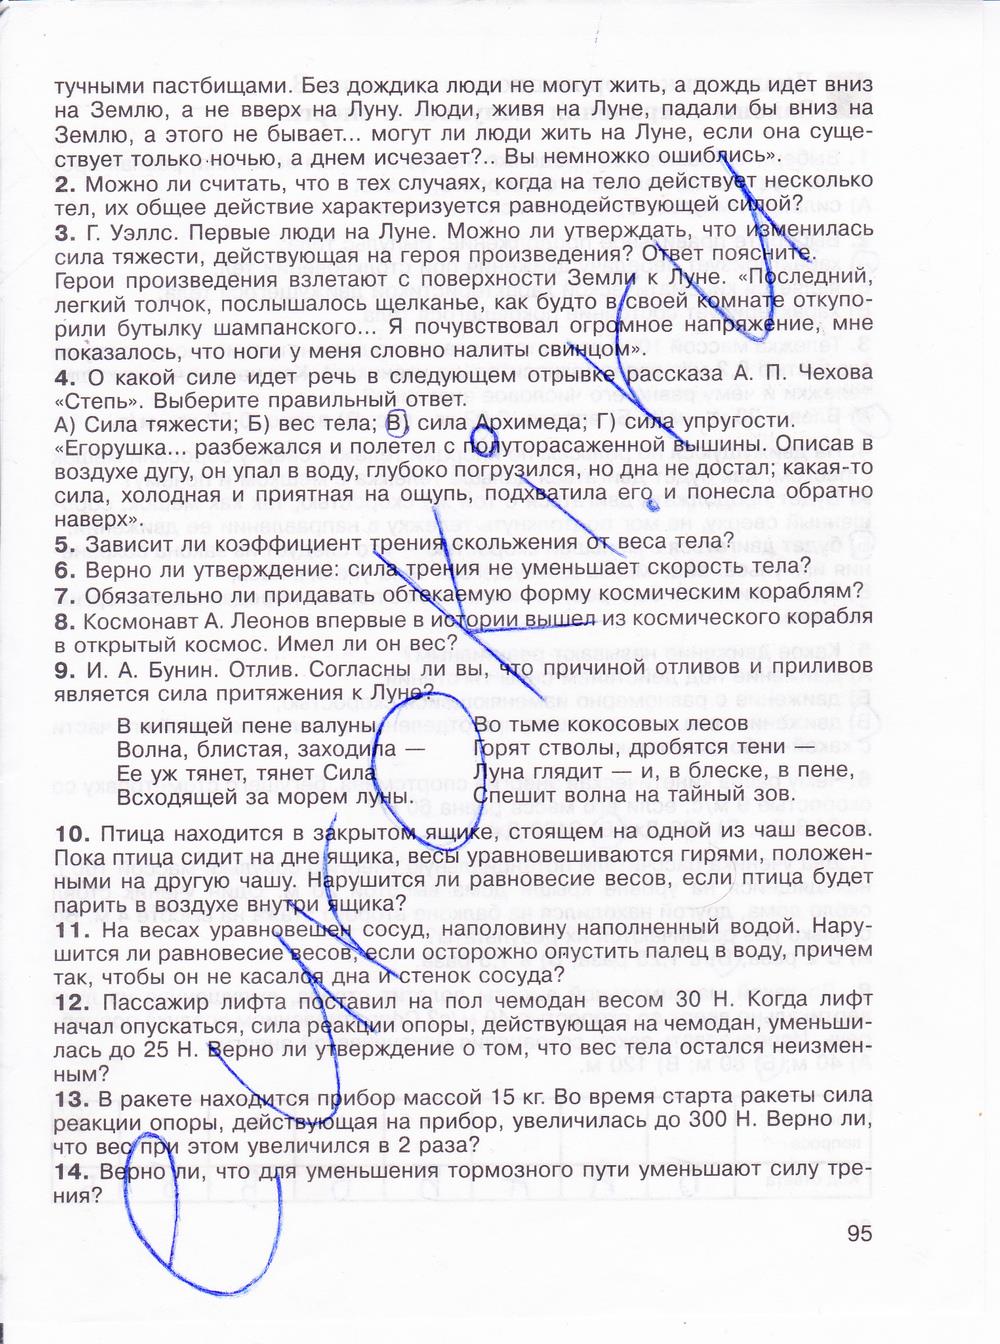 гдз 8 класс рабочая тетрадь страница 95 физика Мартынова, Иванова, Воронина